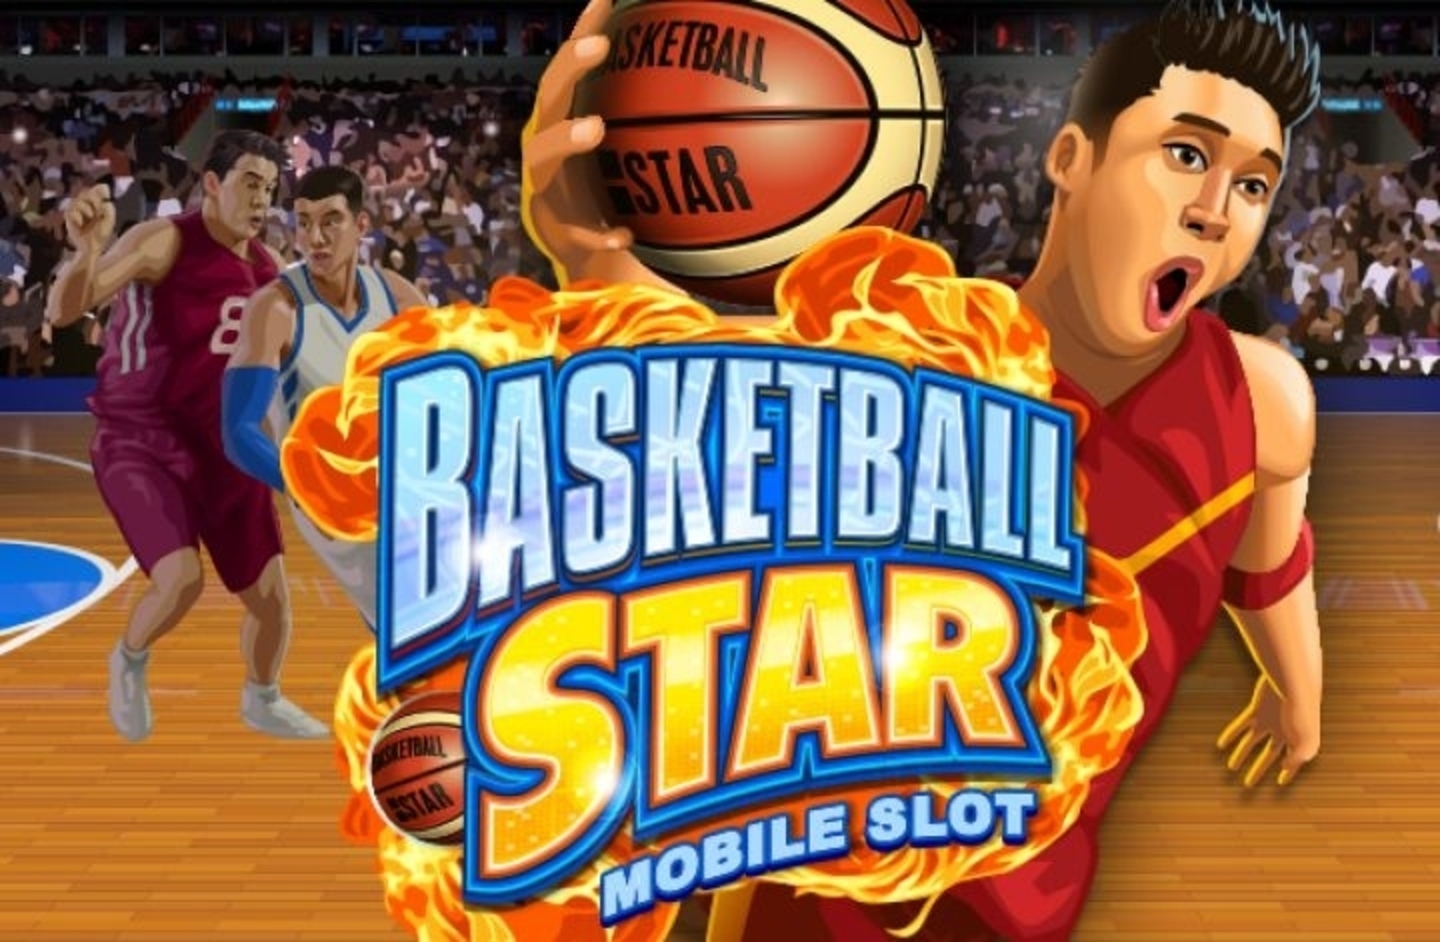 Basketball Star demo